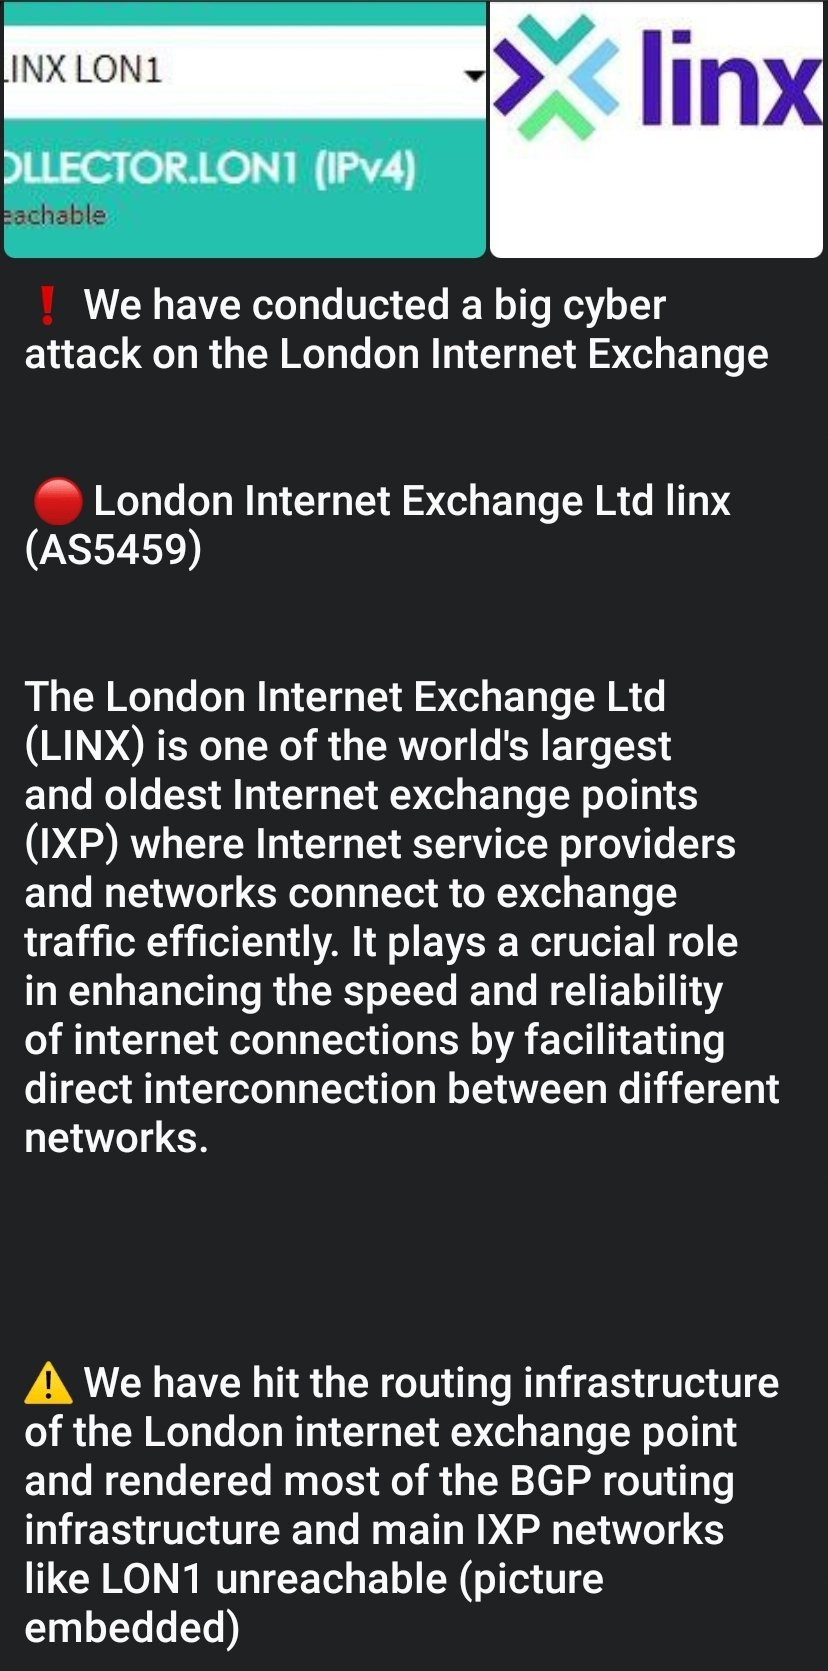 Der Cyberangriff traf den London Internet Exchange